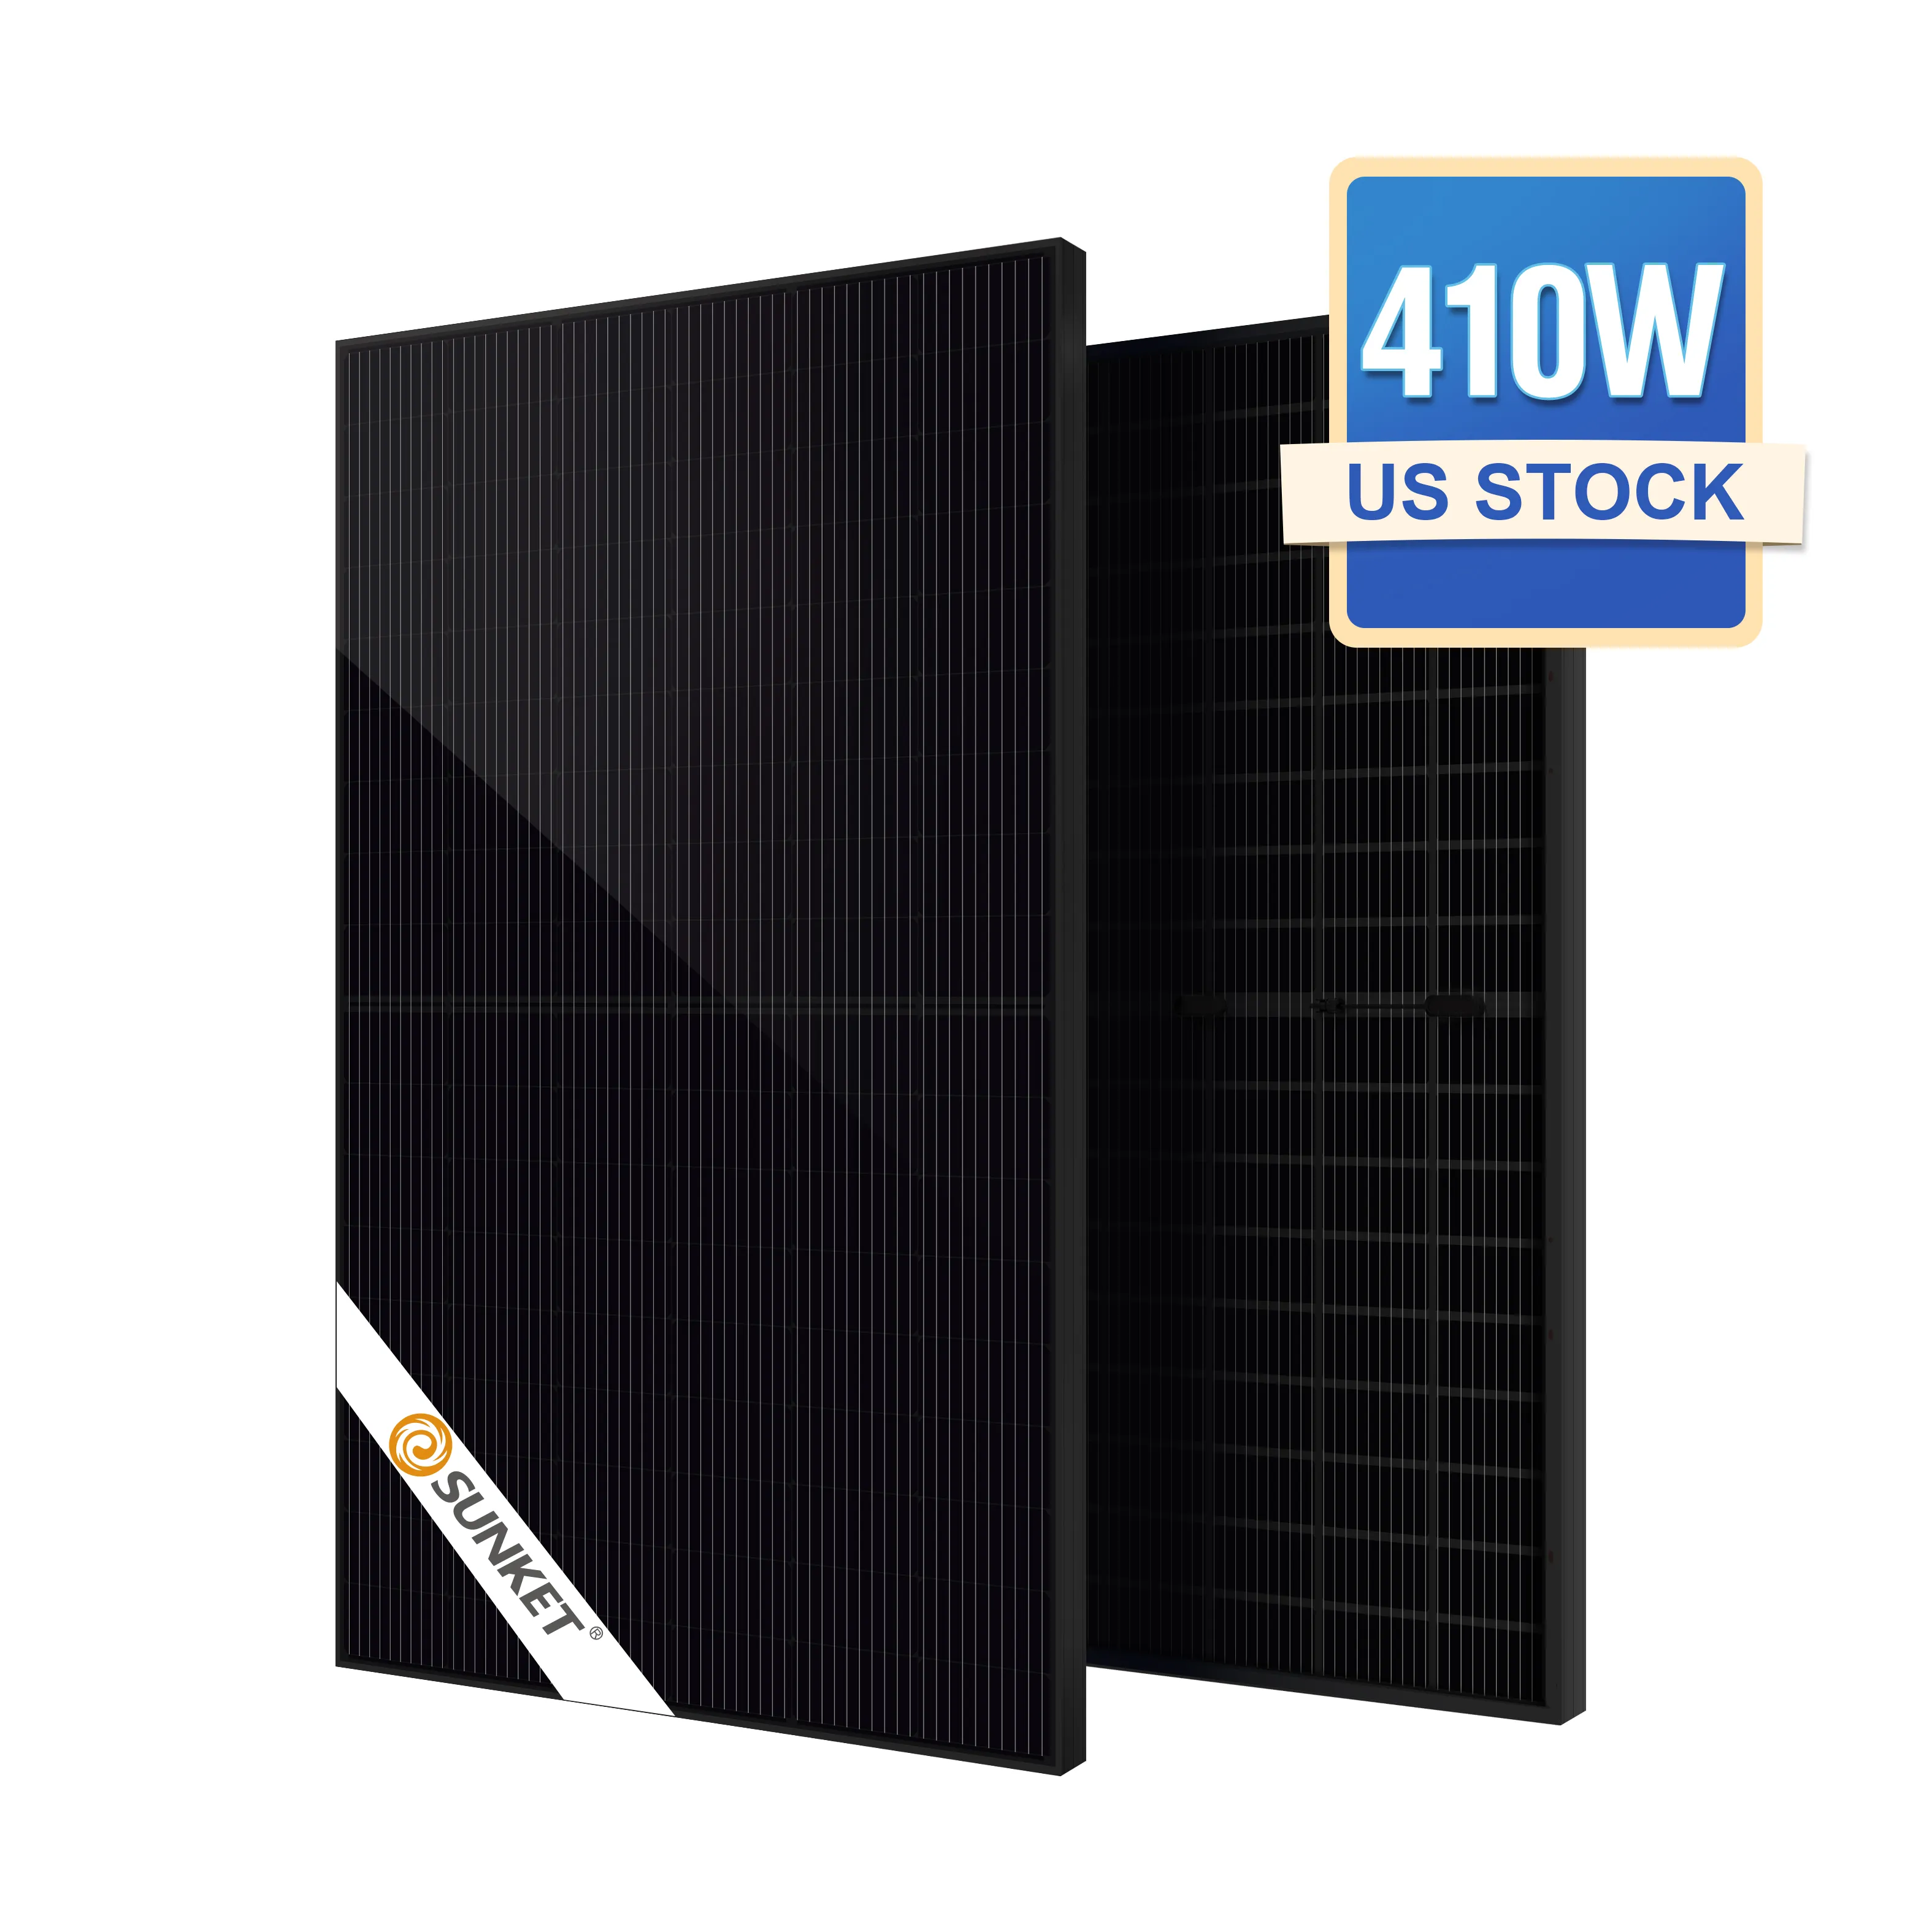 Sunketأفضل سعر 410 واتالأسودألواح الشمسية أحادية مع بطارية احتياطية وعاكس للاستخدام المنزلي - في المخزون الولايات المتحدة الأمريكية